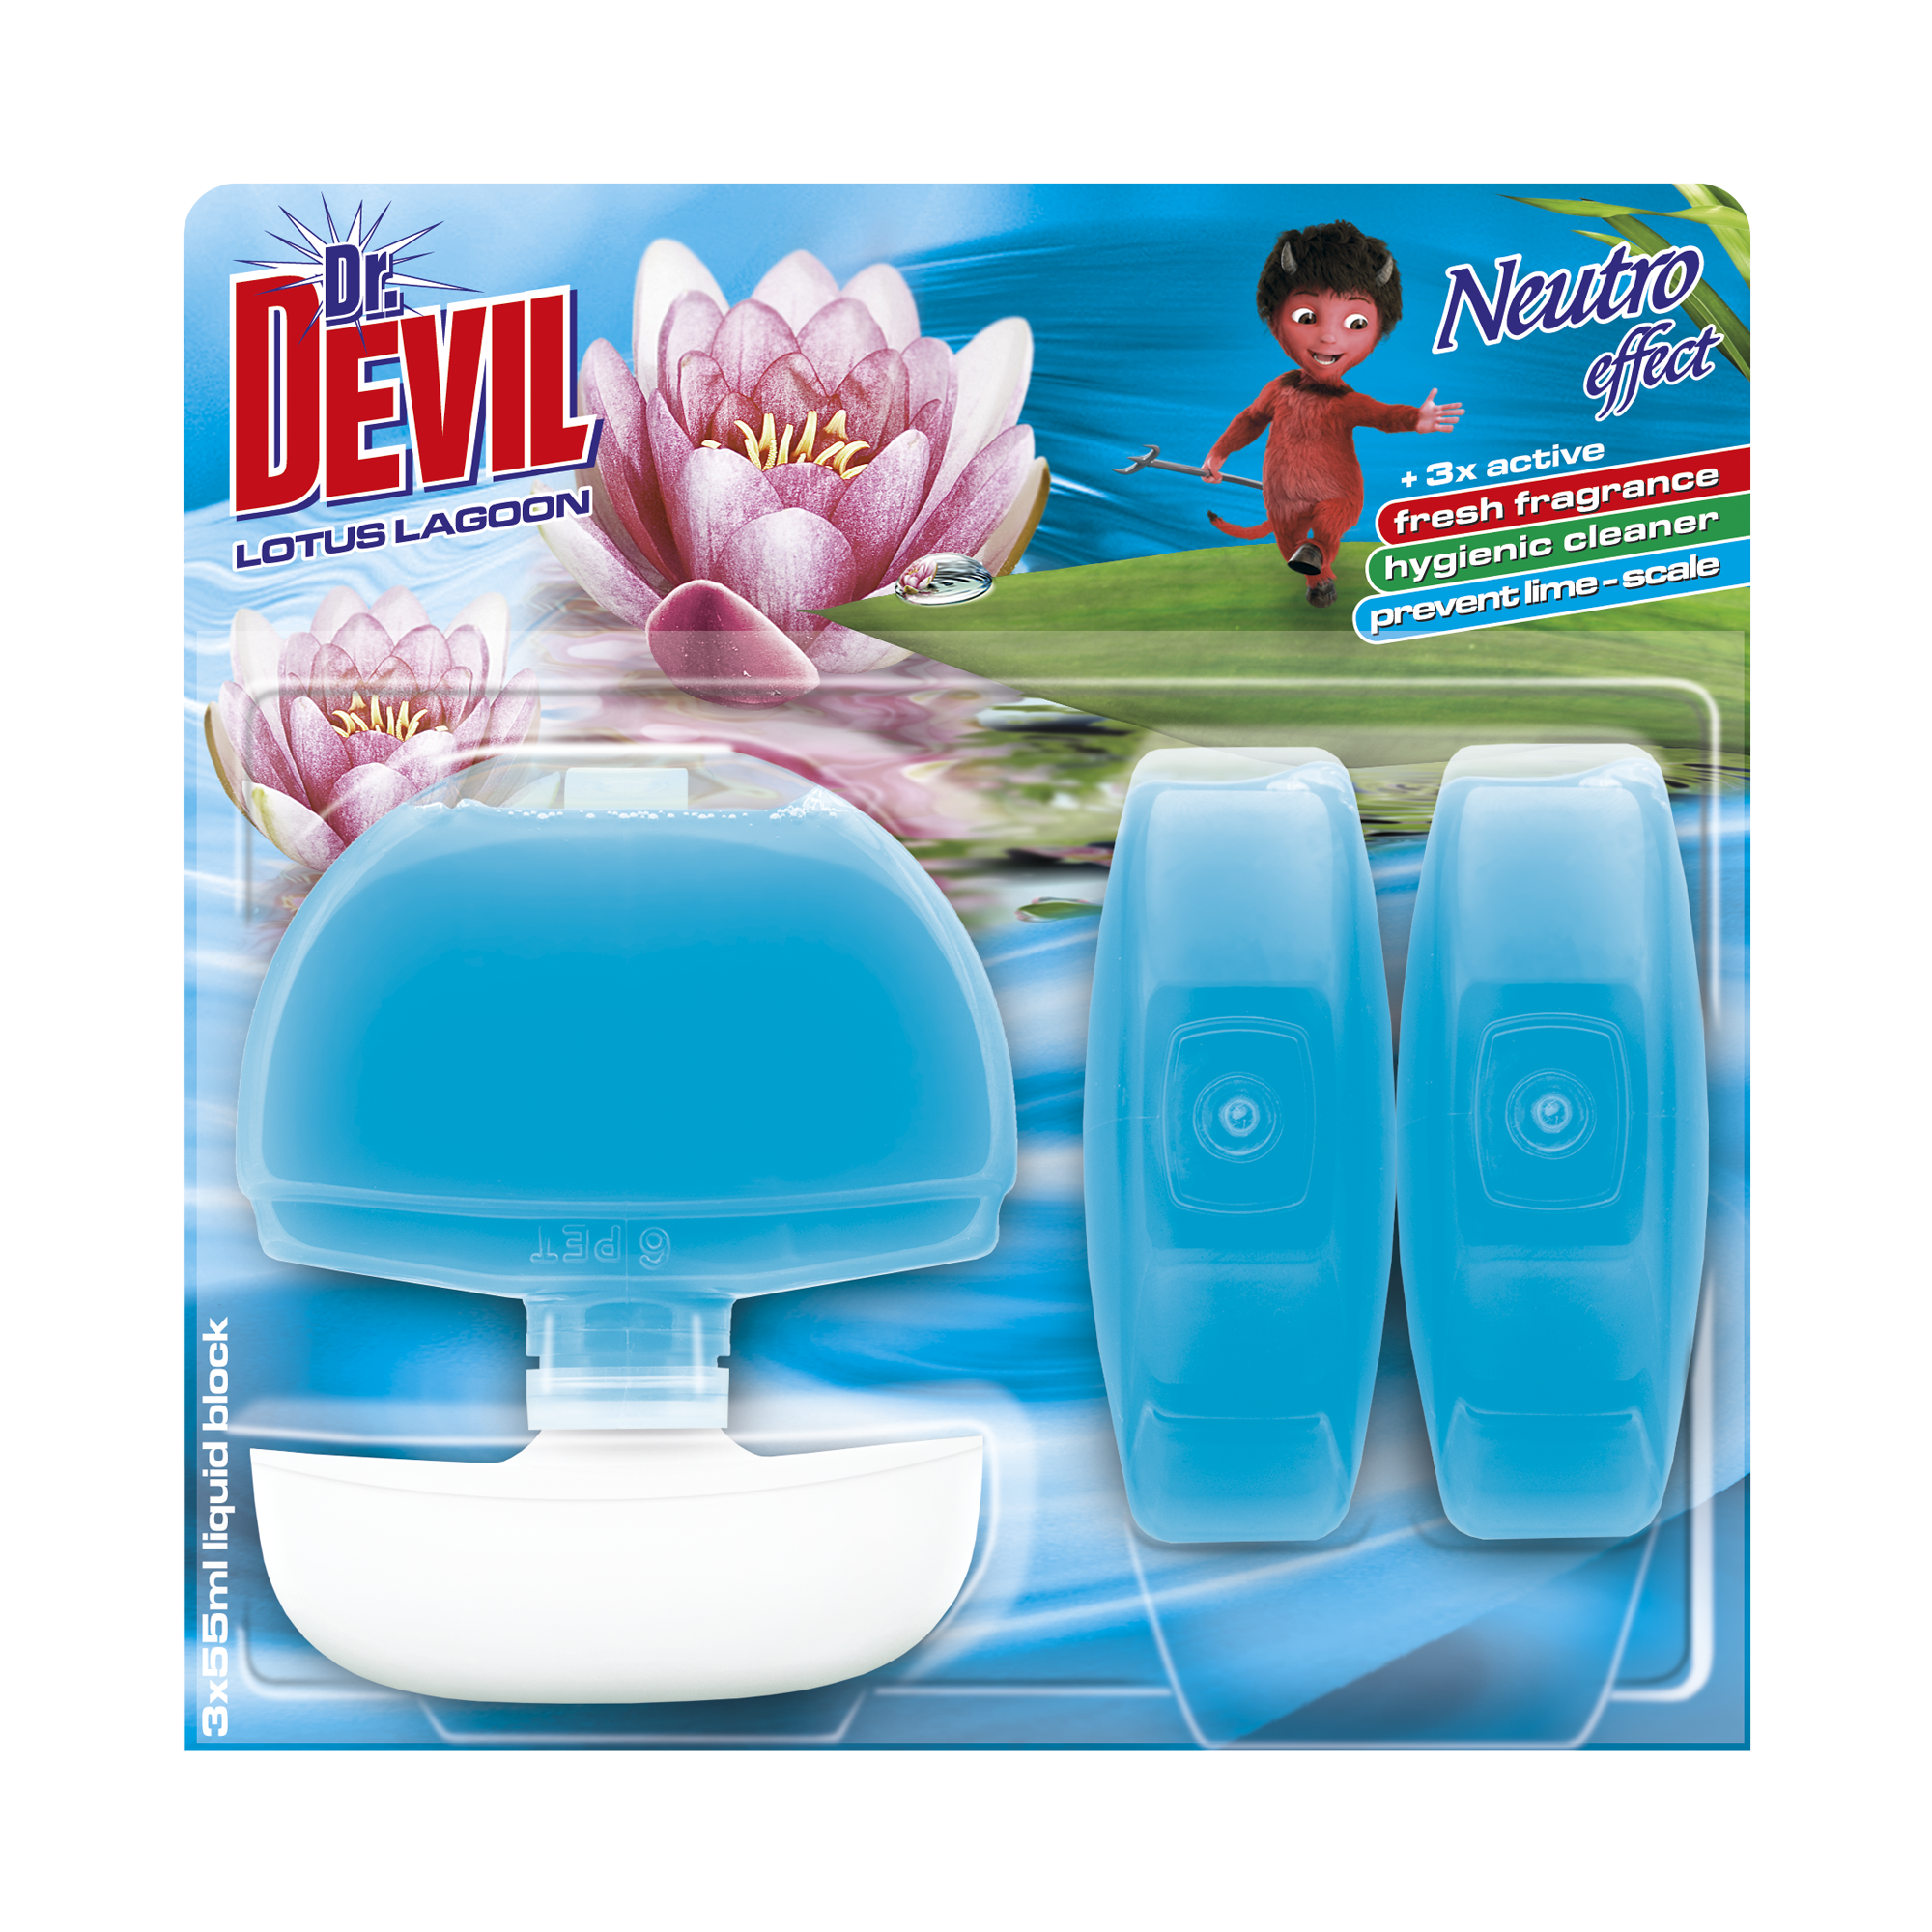 Dr. Devil liquid WC block Neutro effect Lotus Lagoon